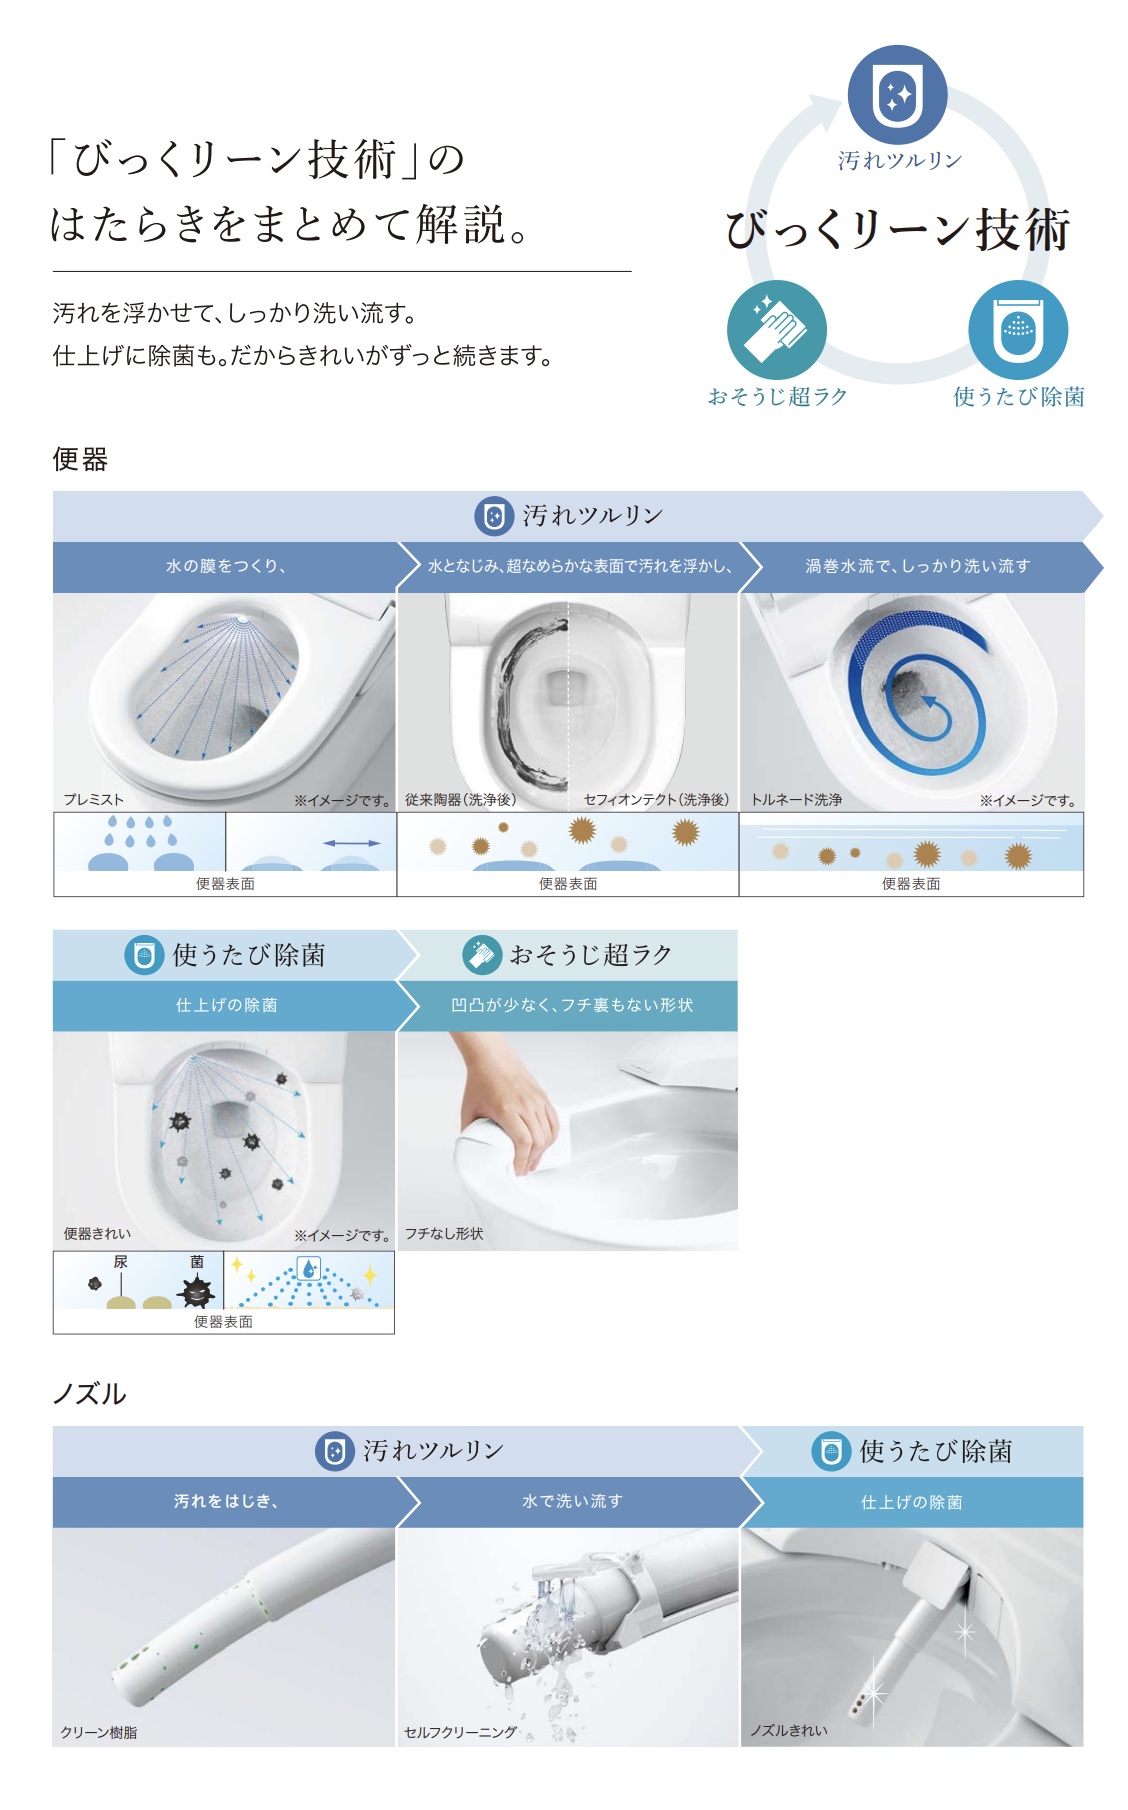 CES9520Fのトイレきれいの技術